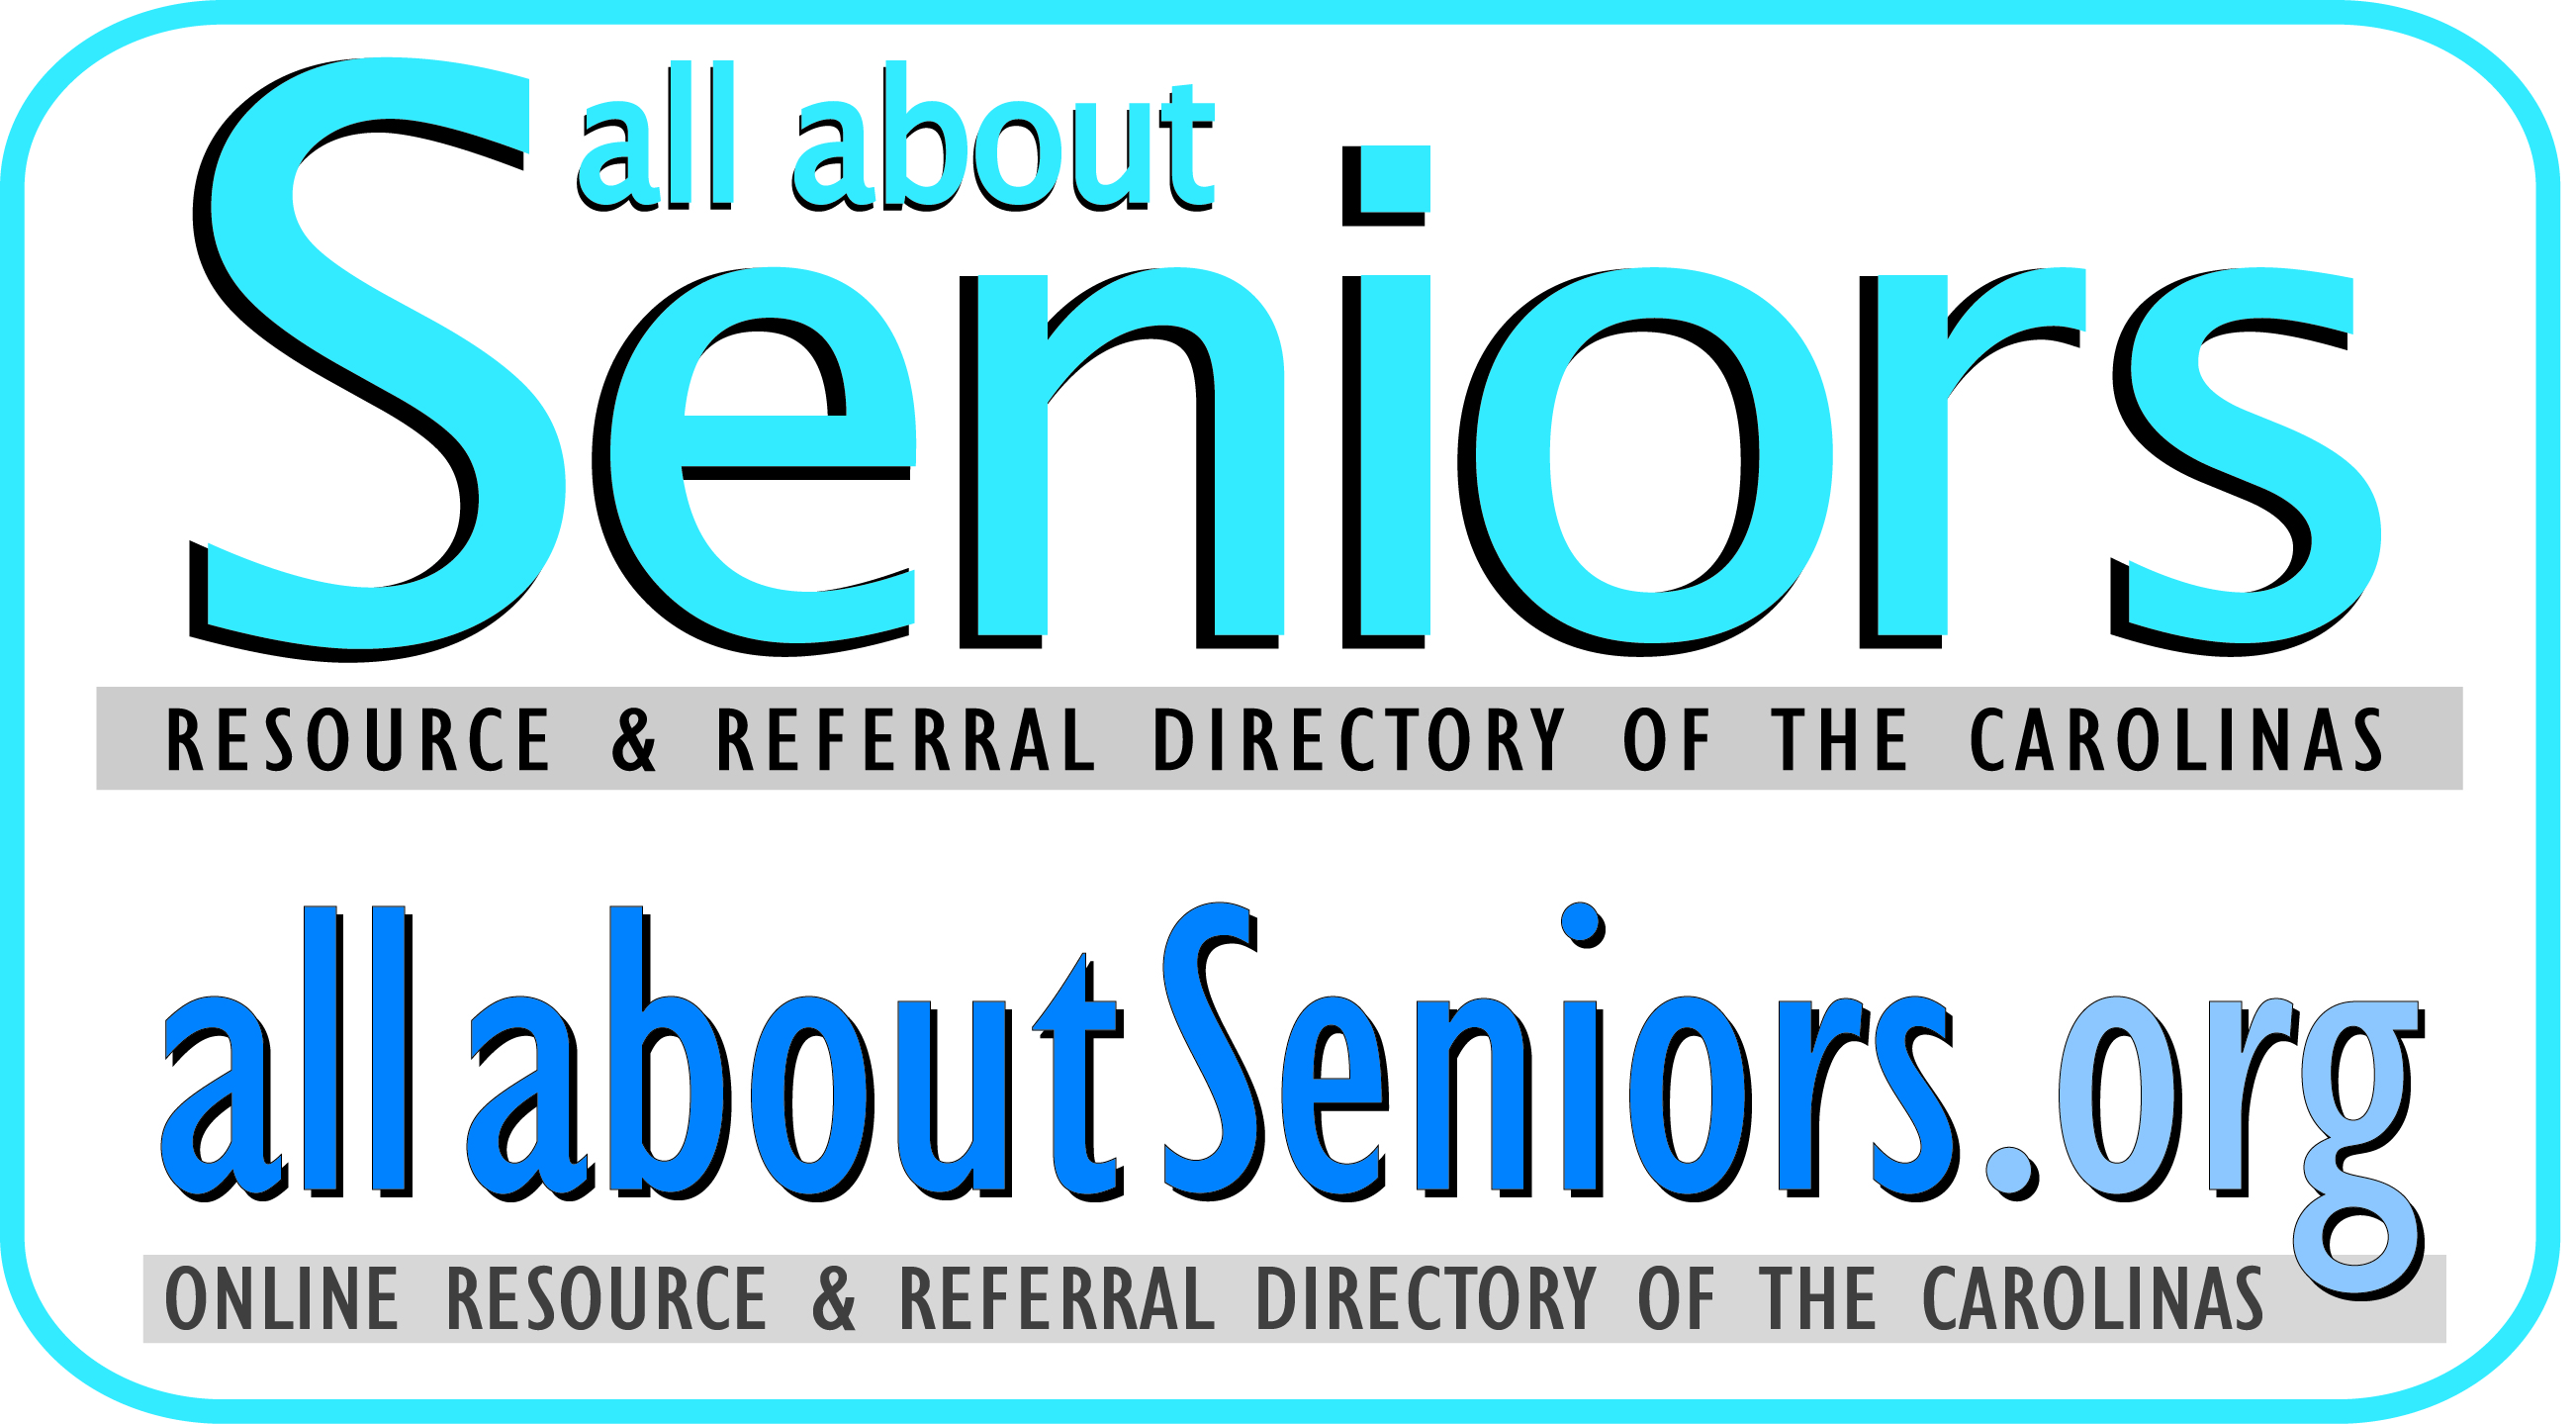 C. All About Seniors (Aluminum)